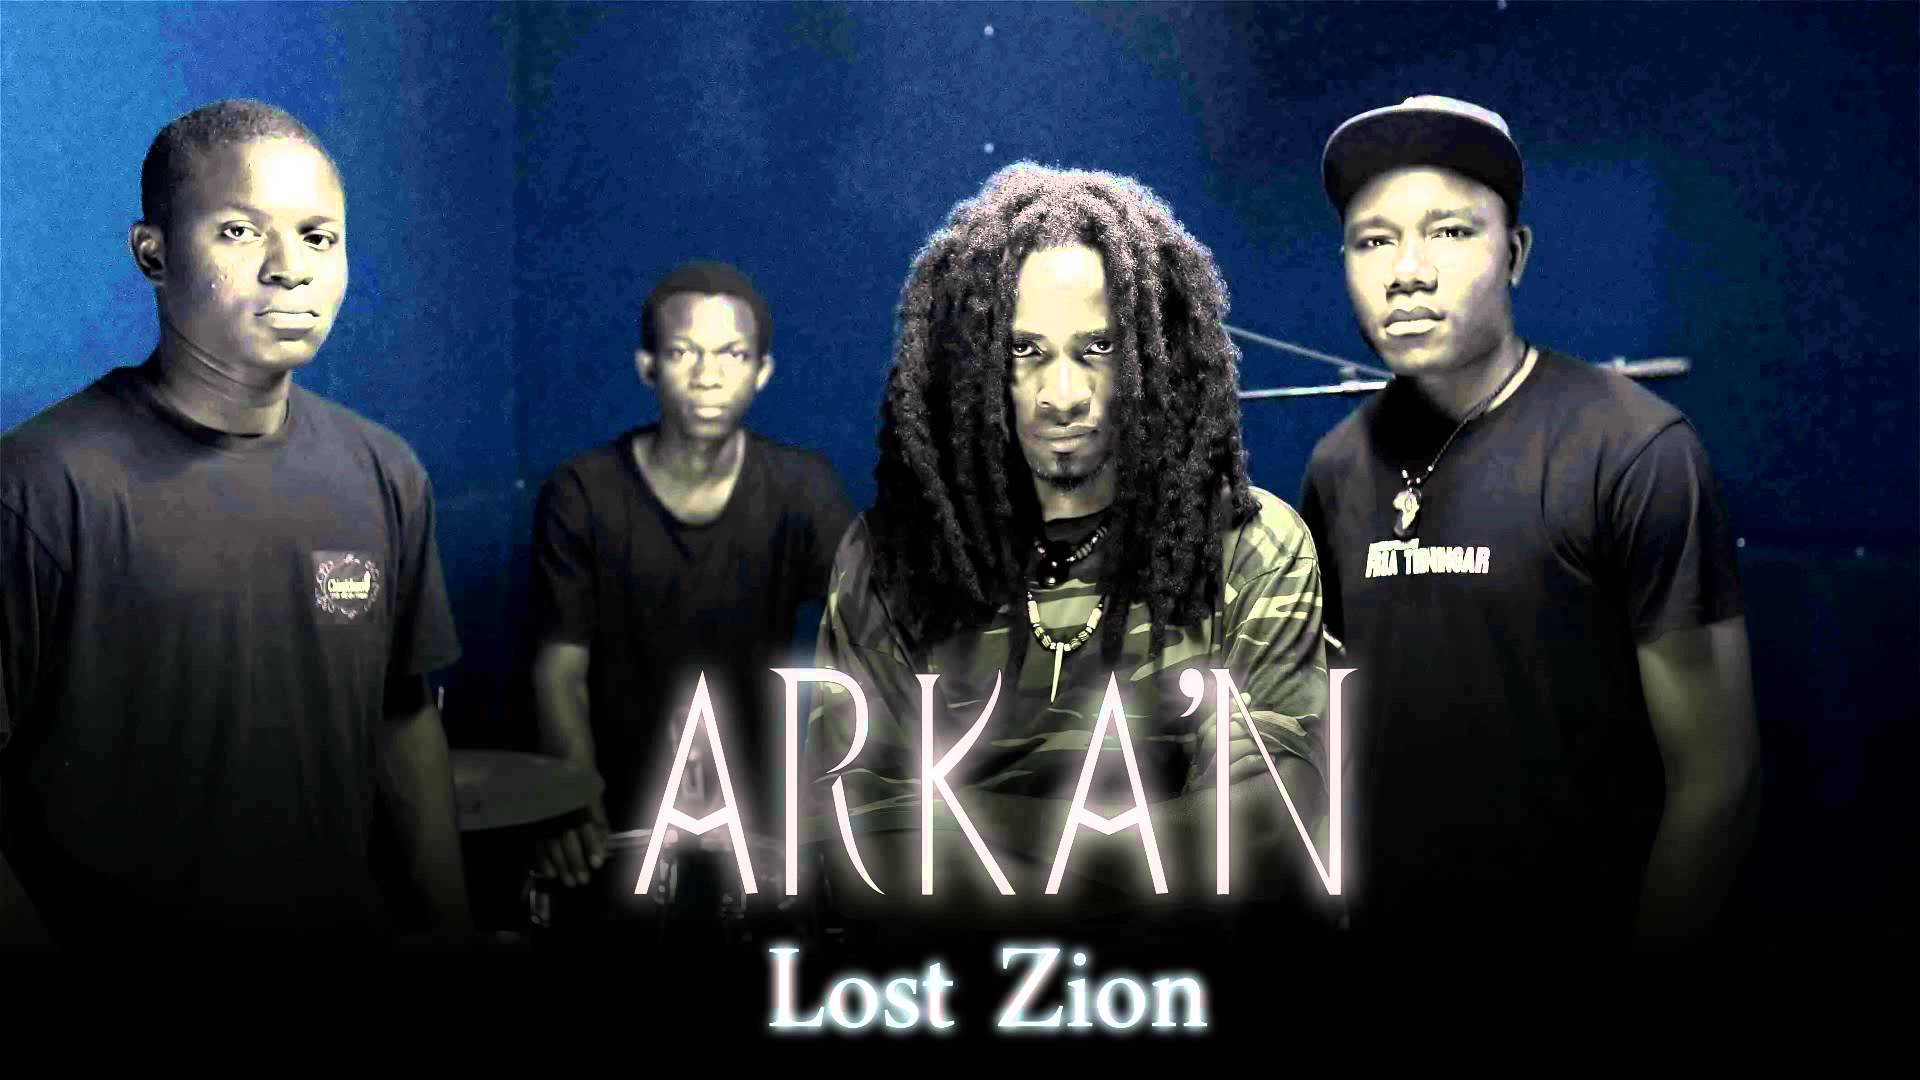 ARKA'N - Afrika Hard Metal